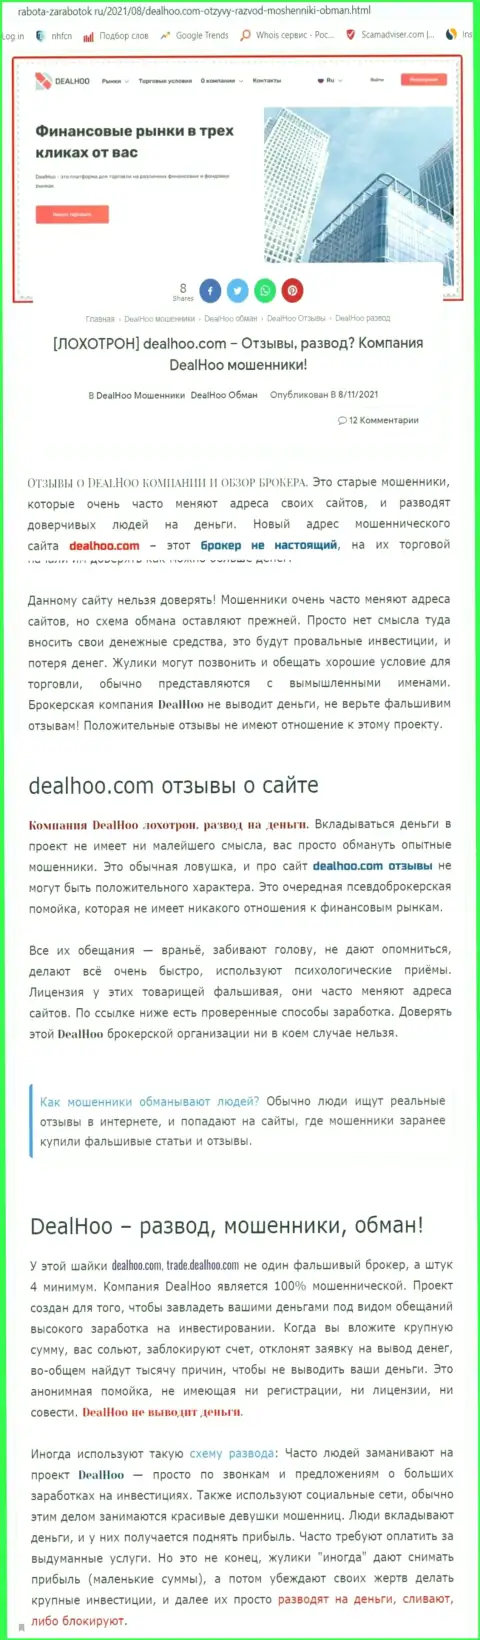 DealHoo Com - это МОШЕННИКИ !!! Обзор организации и честные отзывы потерпевших